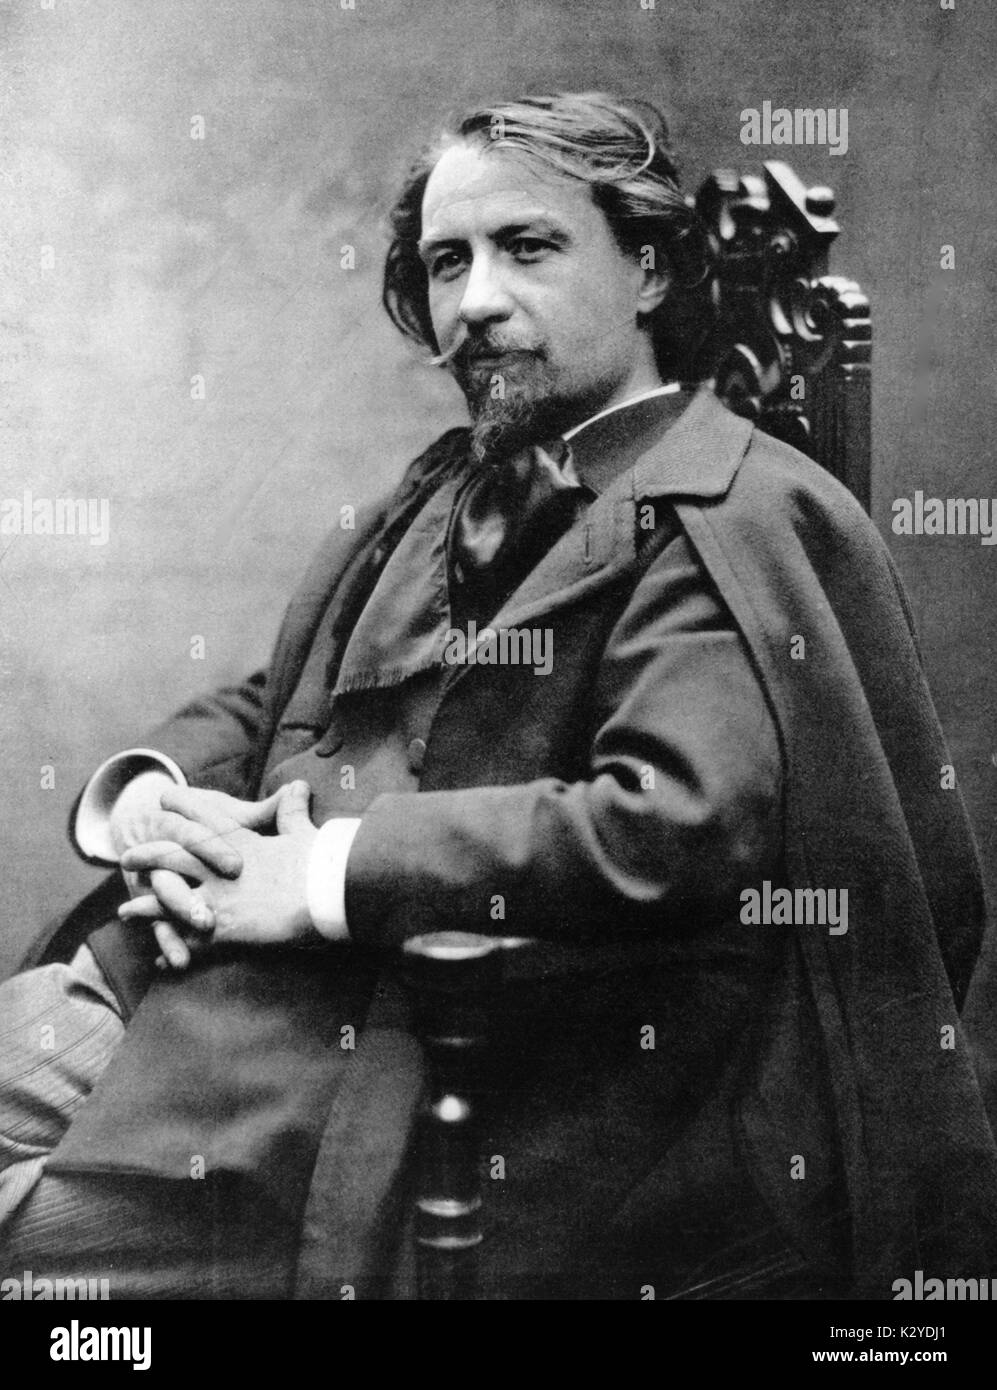 CHARPENTIER, Gustave - c.1902 compositeur et critique musical français, 1880-1960 Banque D'Images